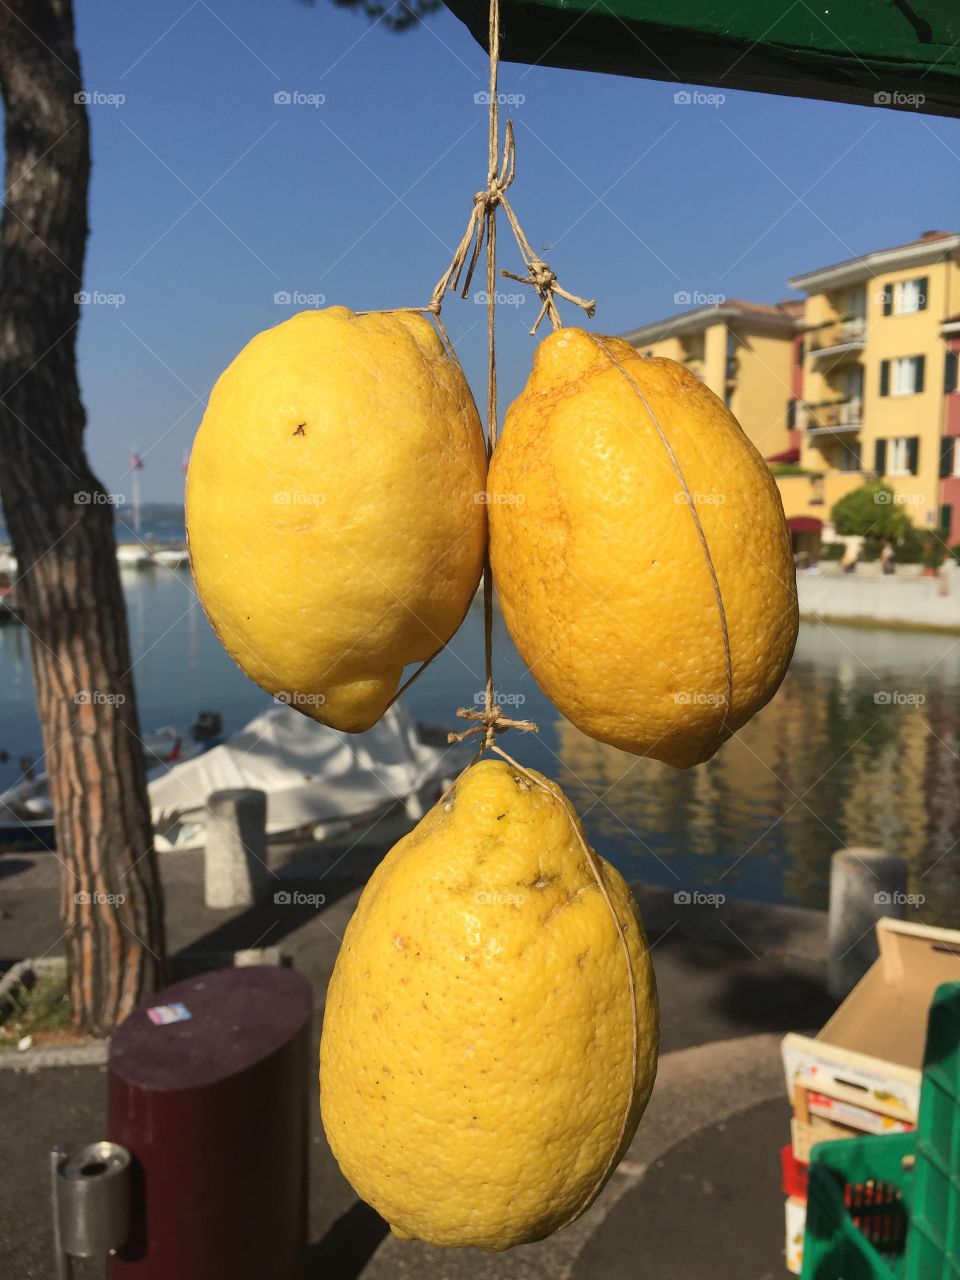 Lemon from Italy